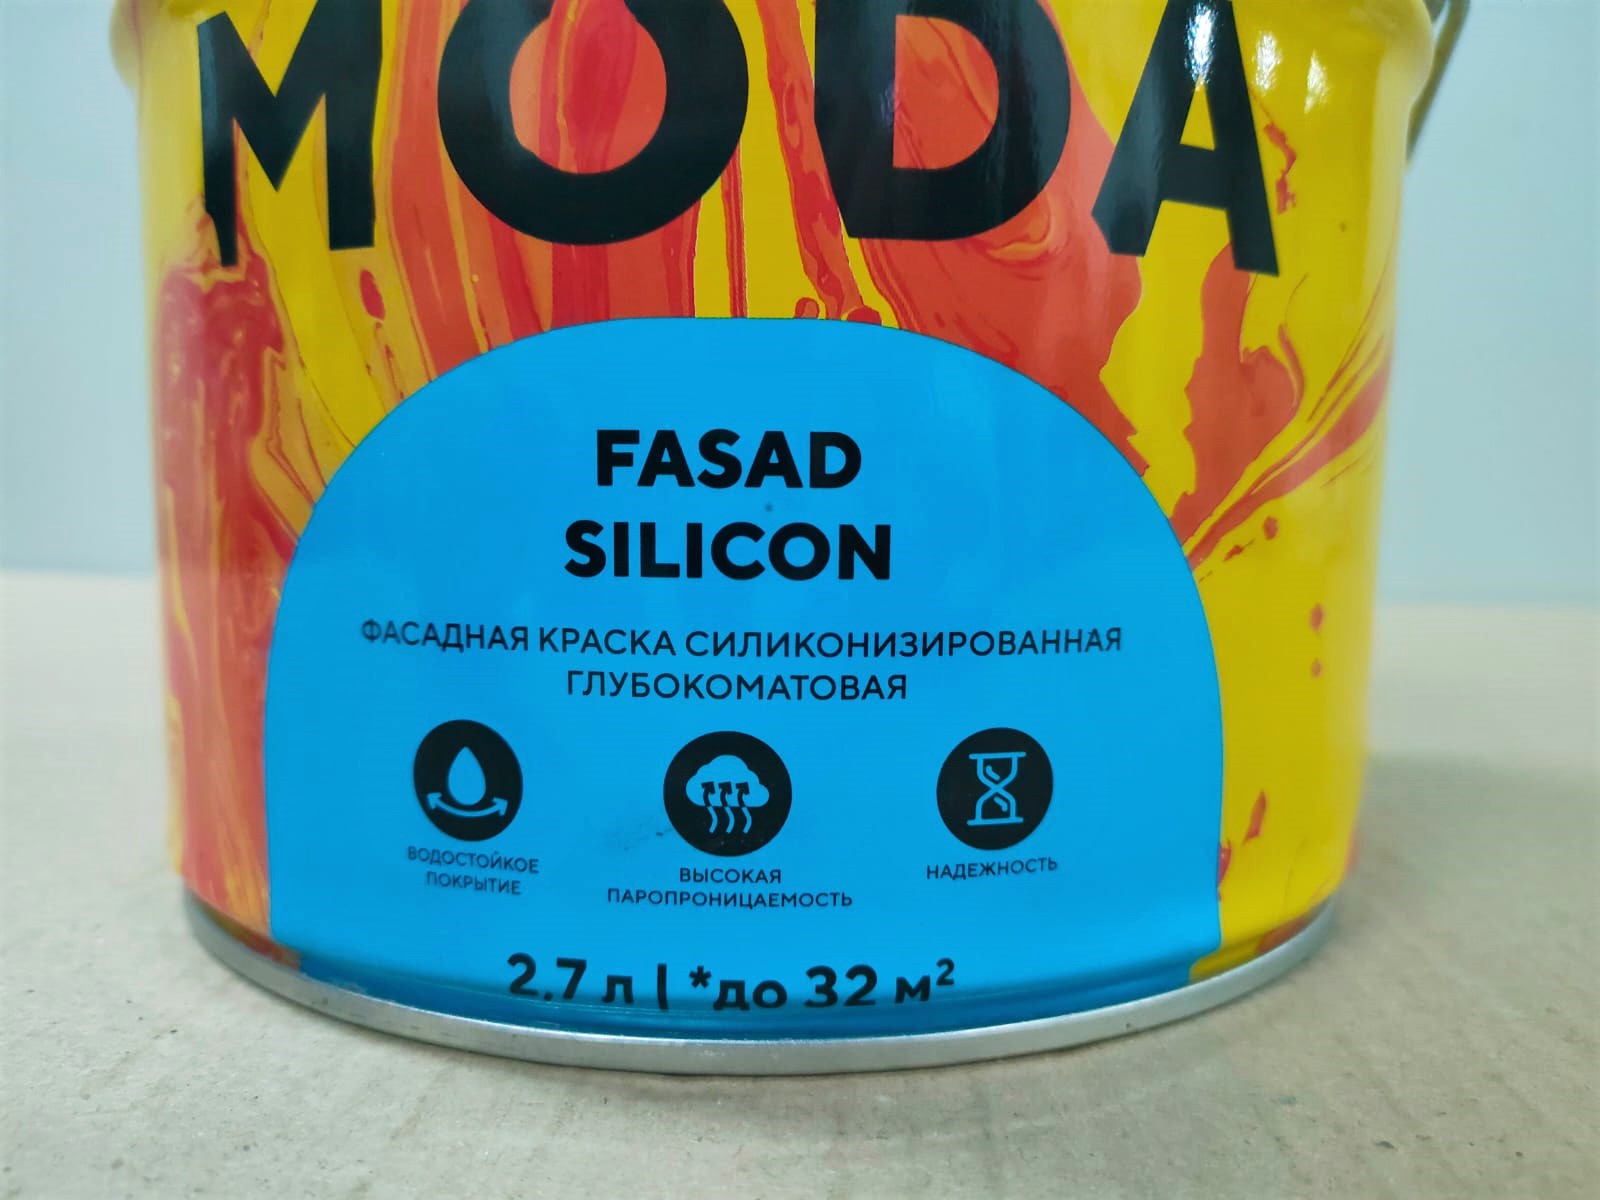 Фасадная краска силиконизированная Eskaro MODA Fasad Silicon (База TR - прозрачная) 2.7 л								